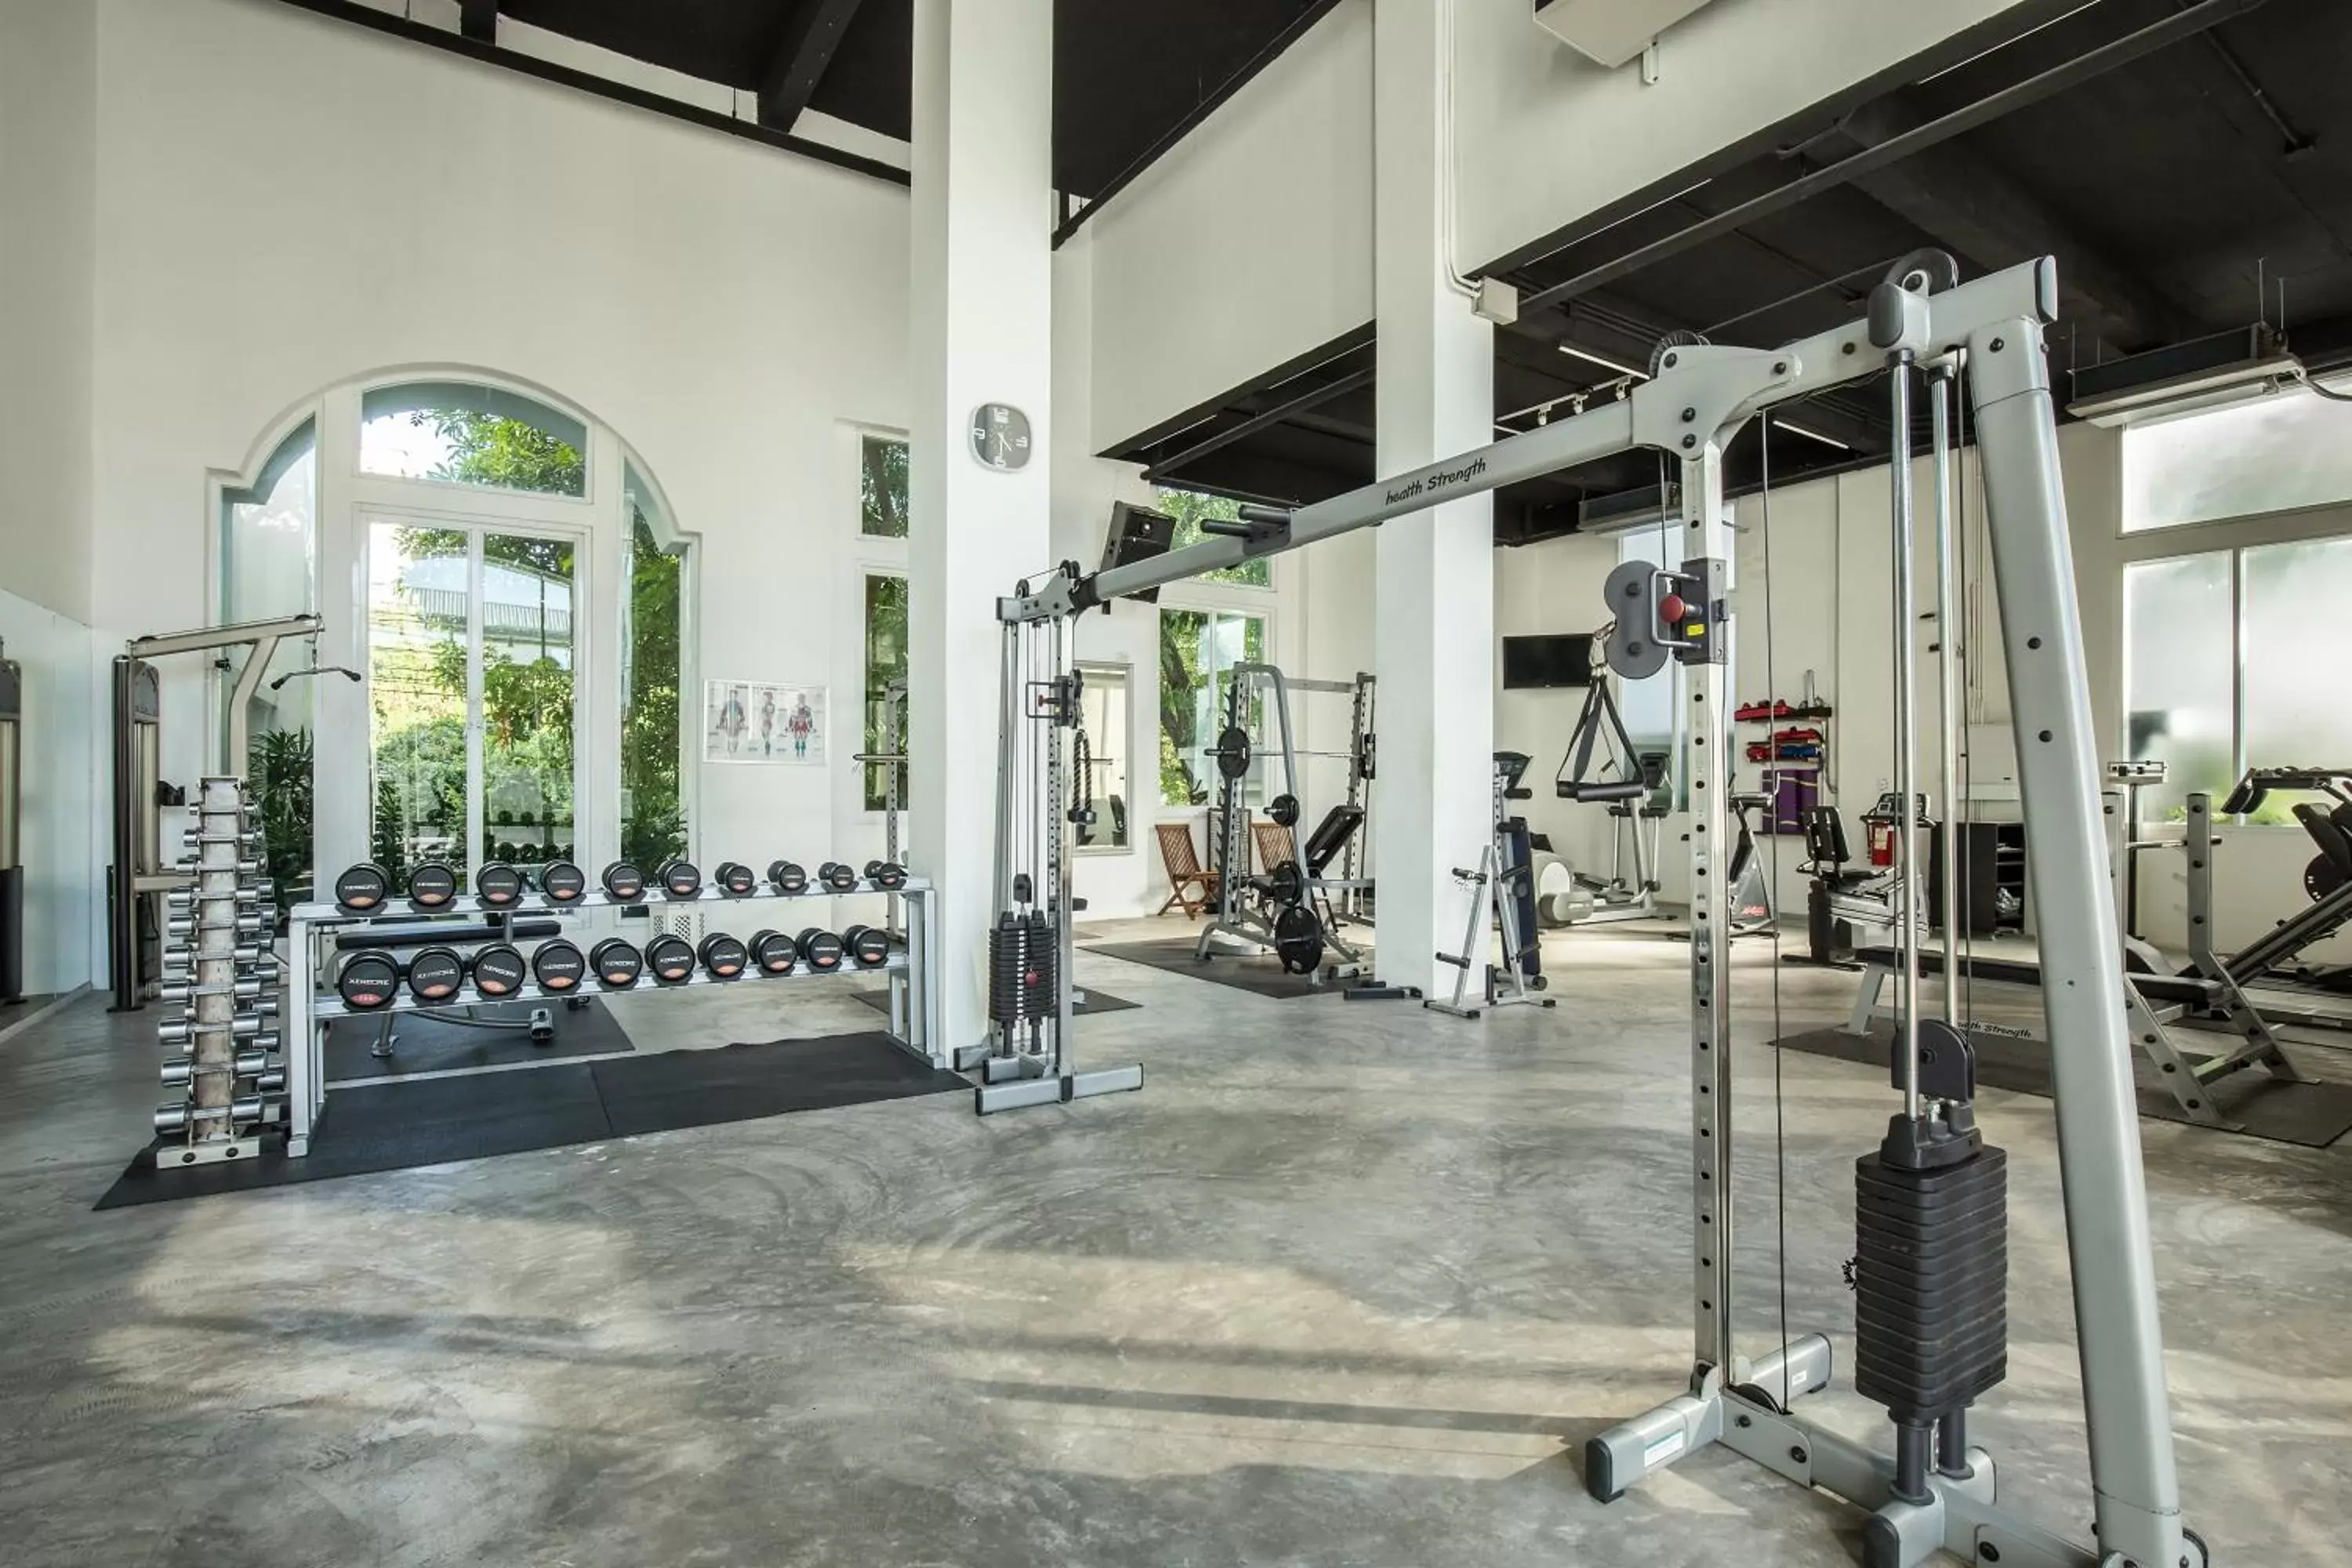 Fitness centre/facilities, Fitness Center/Facilities in D Varee Jomtien Beach, Pattaya